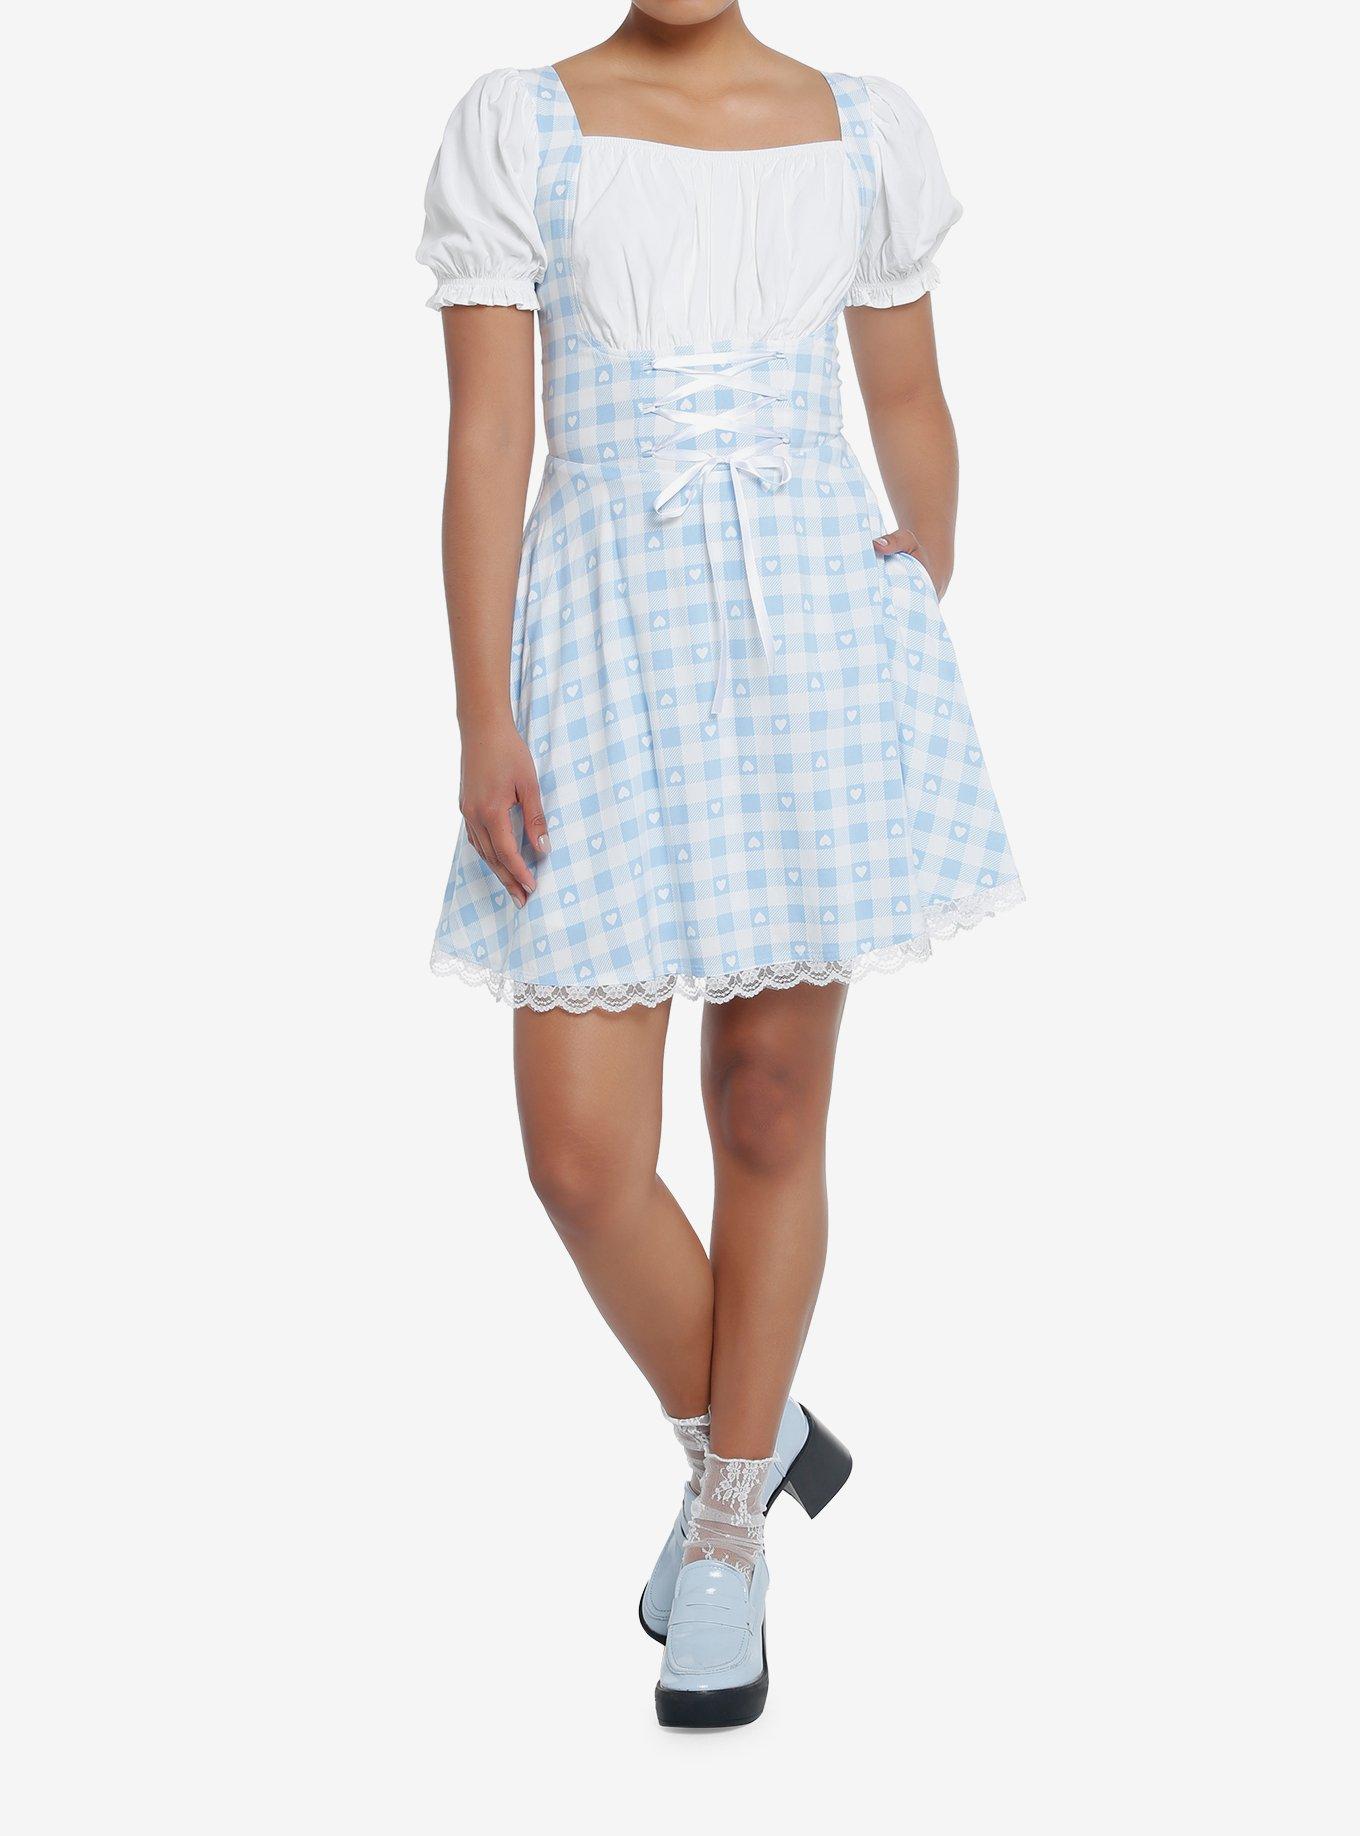 Sweet Society Blue & White Gingham Corset Dress, GINGHAM CHECK, alternate